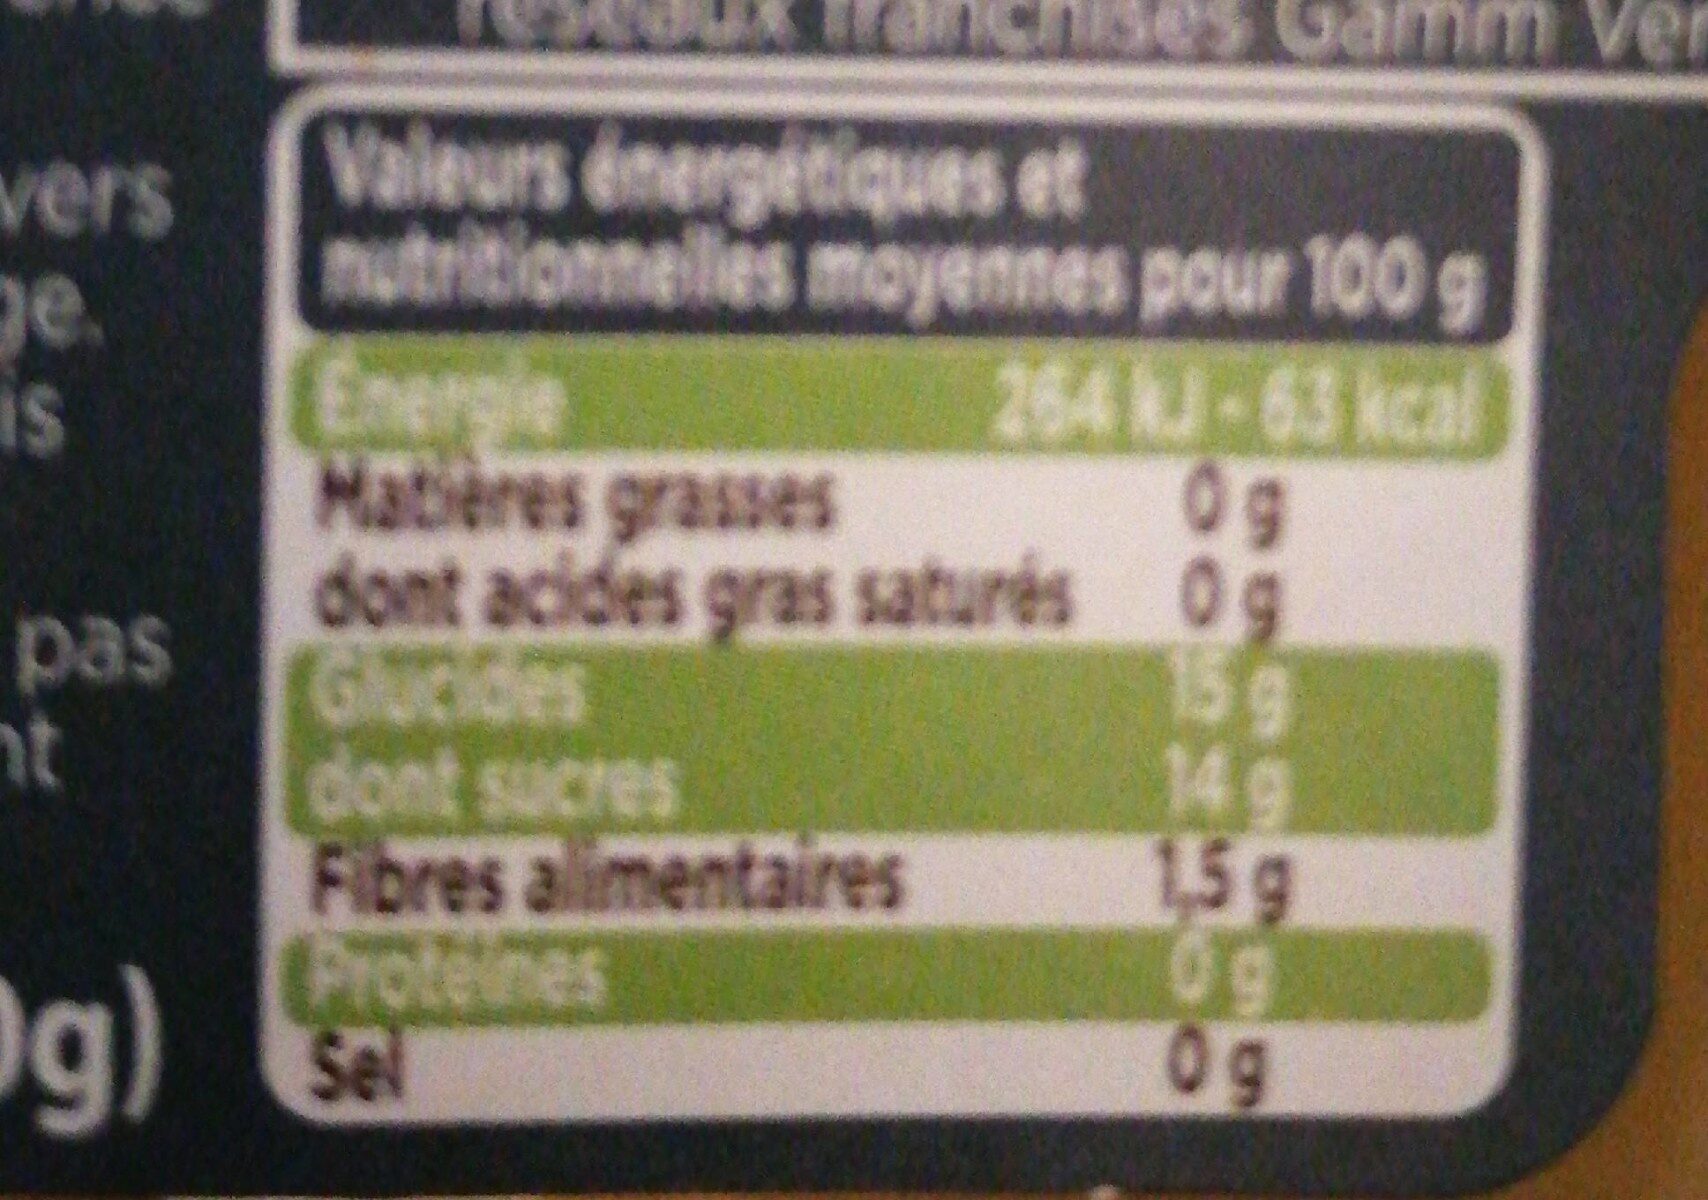 Nos 4 mini pots de pomme de la vallée du rhone - Nutrition facts - fr